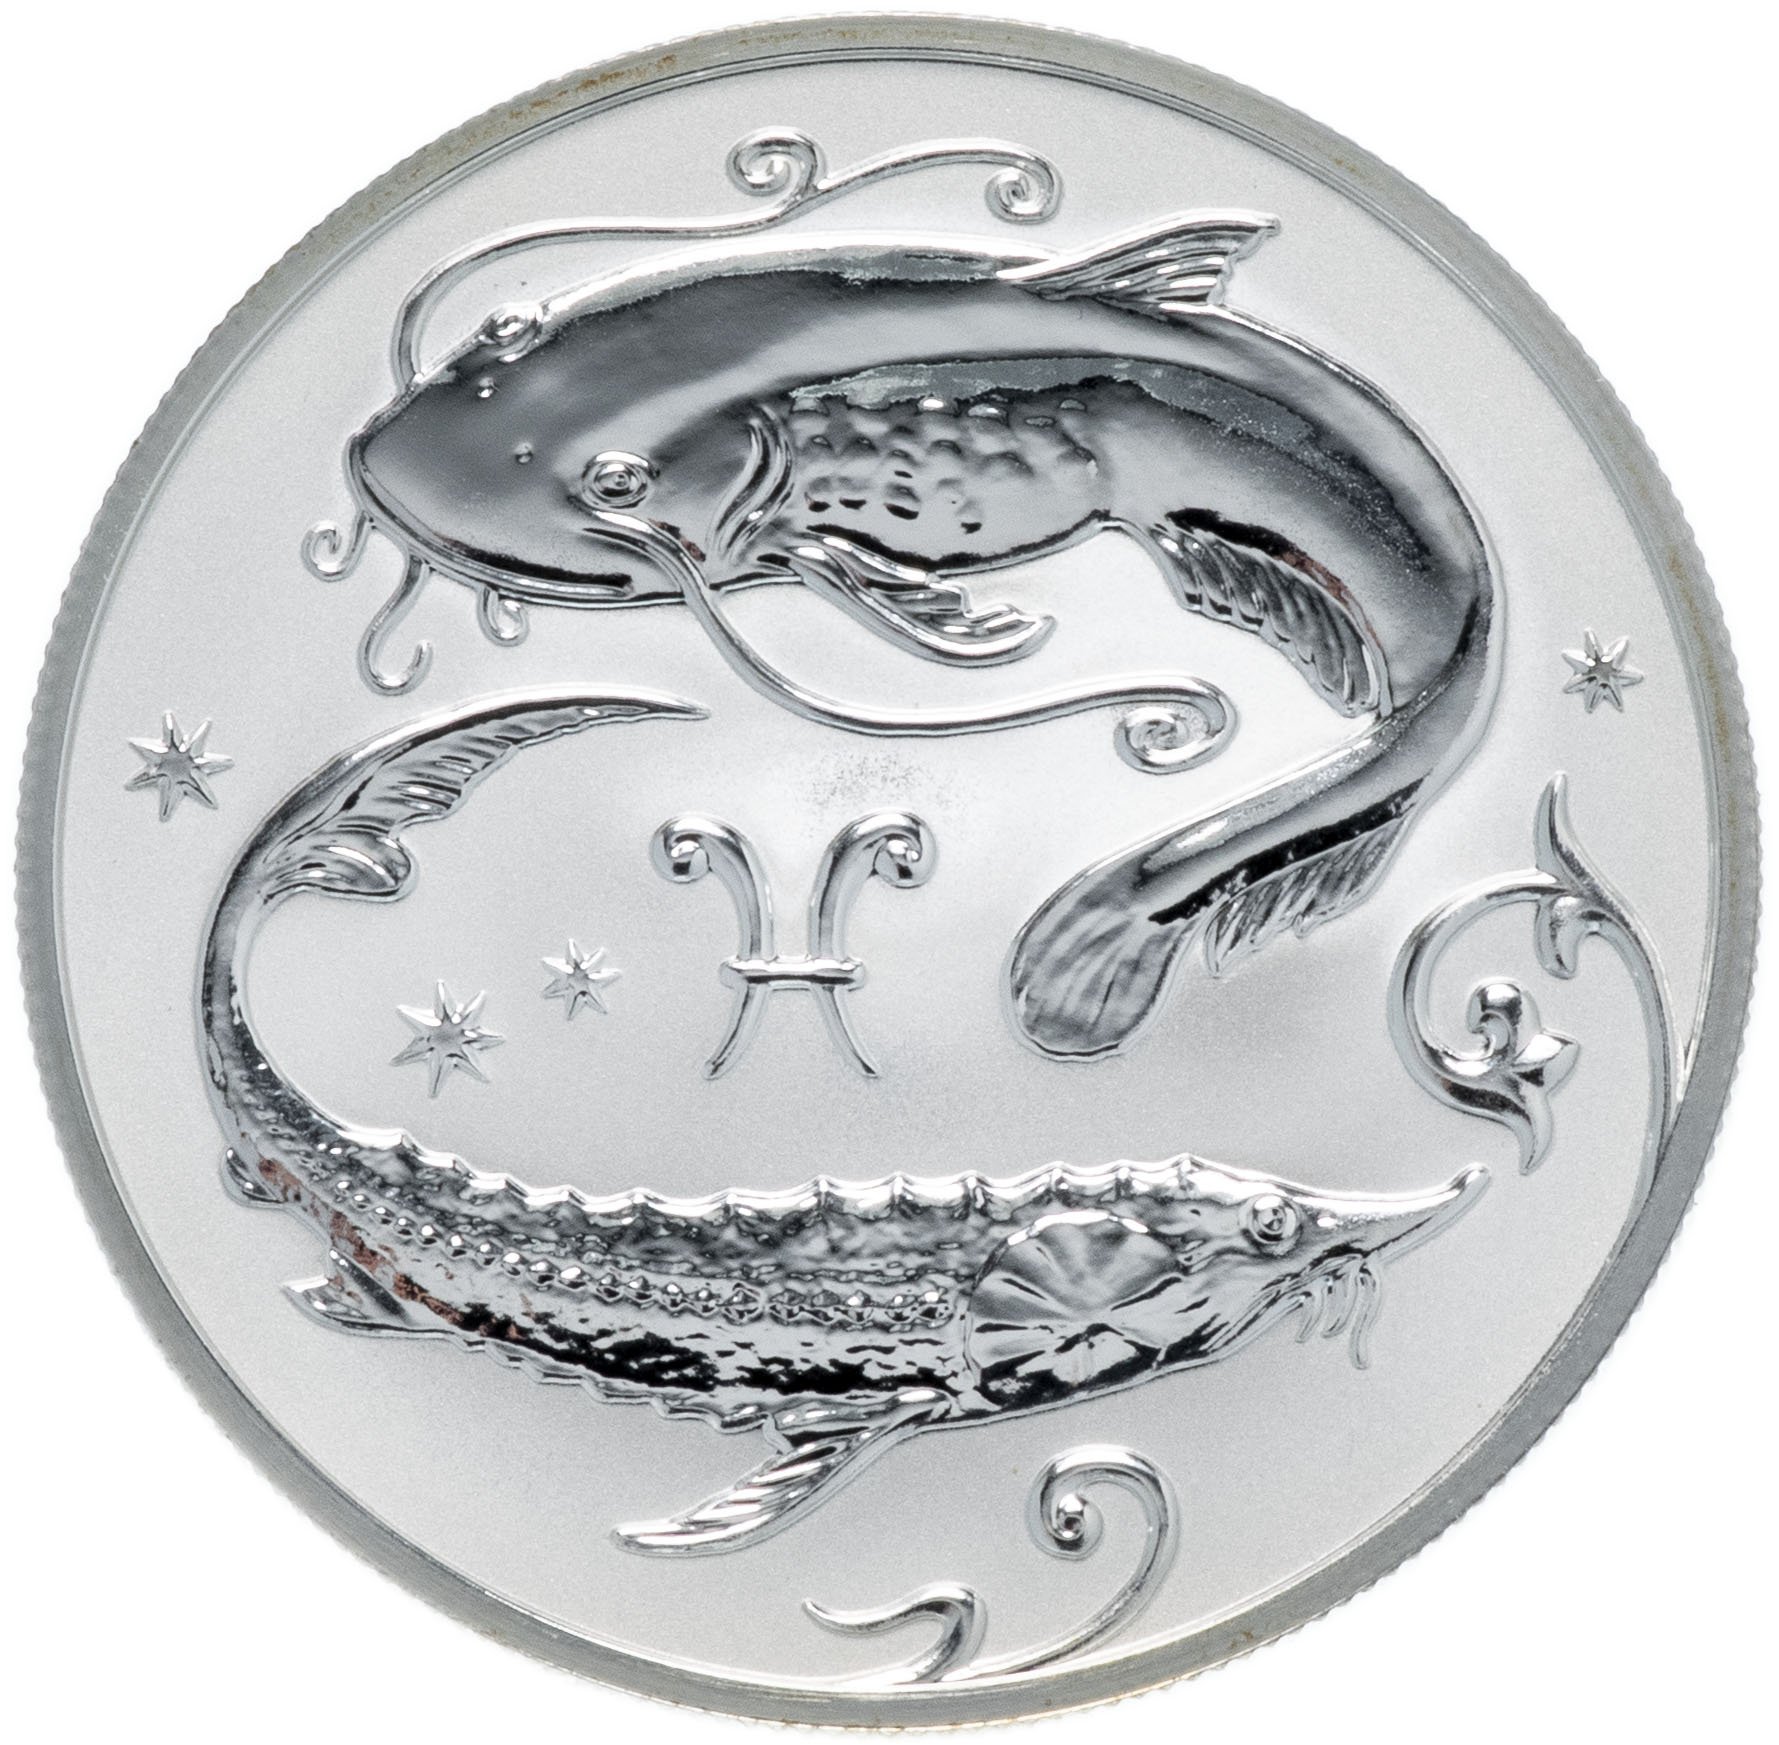 Рыба в год змеи. Монеты Созвездие серебро 2 рубля рыбы. Два рубля серебро 2005 рыбы. Монета 2 рубля 2005 года серебро. Серебряная монета рыбы.